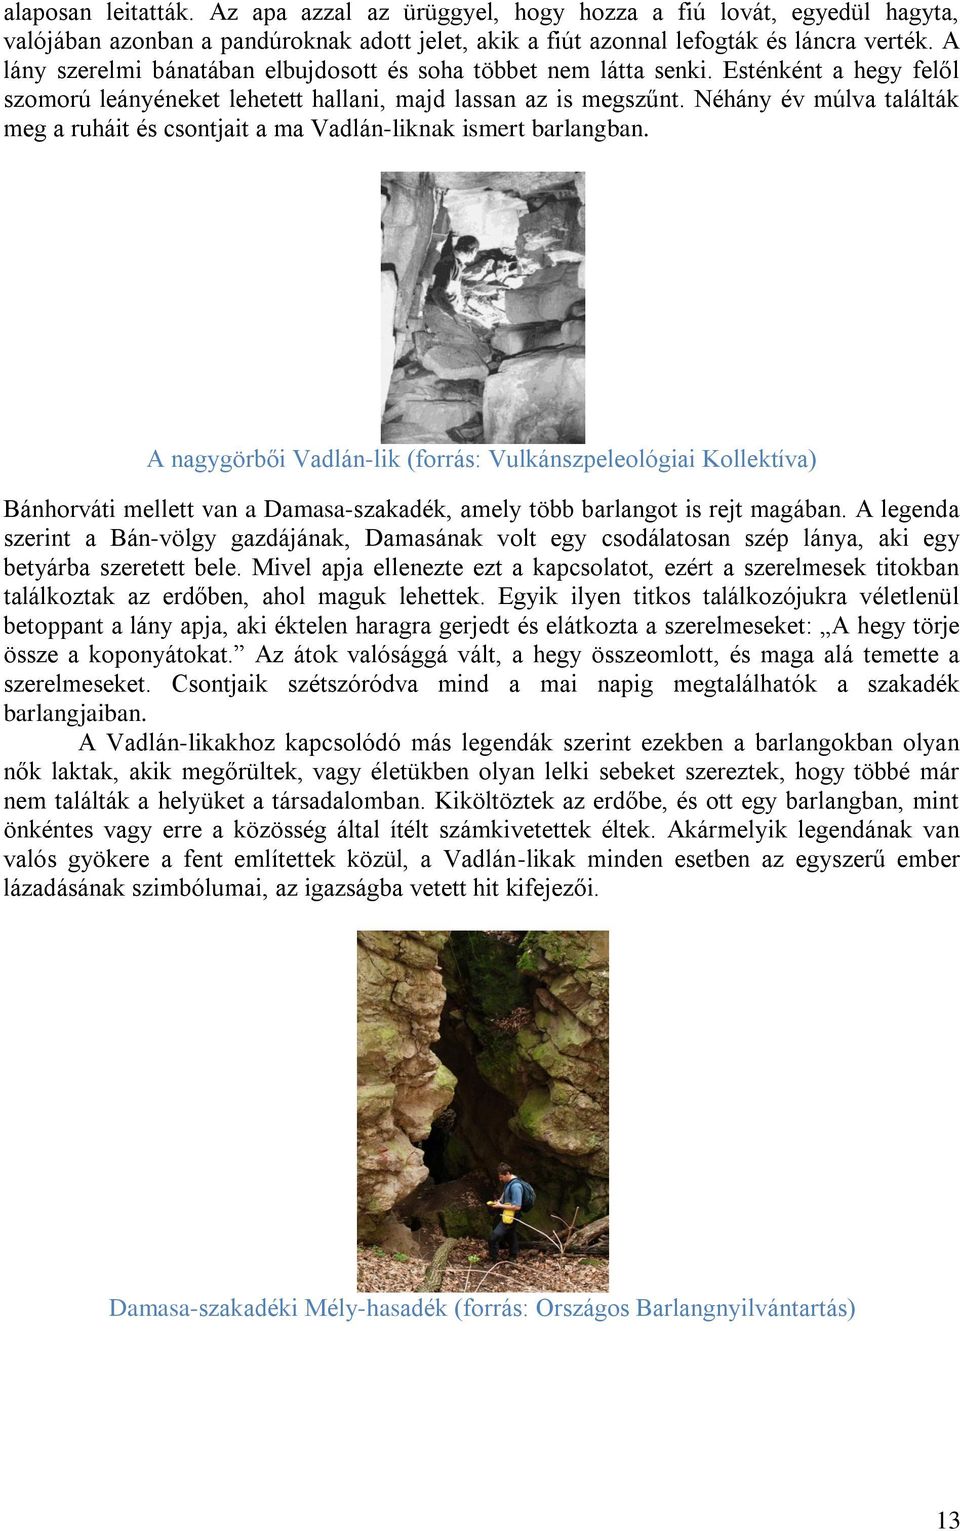 Néhány év múlva találták meg a ruháit és csontjait a ma Vadlán-liknak ismert barlangban.